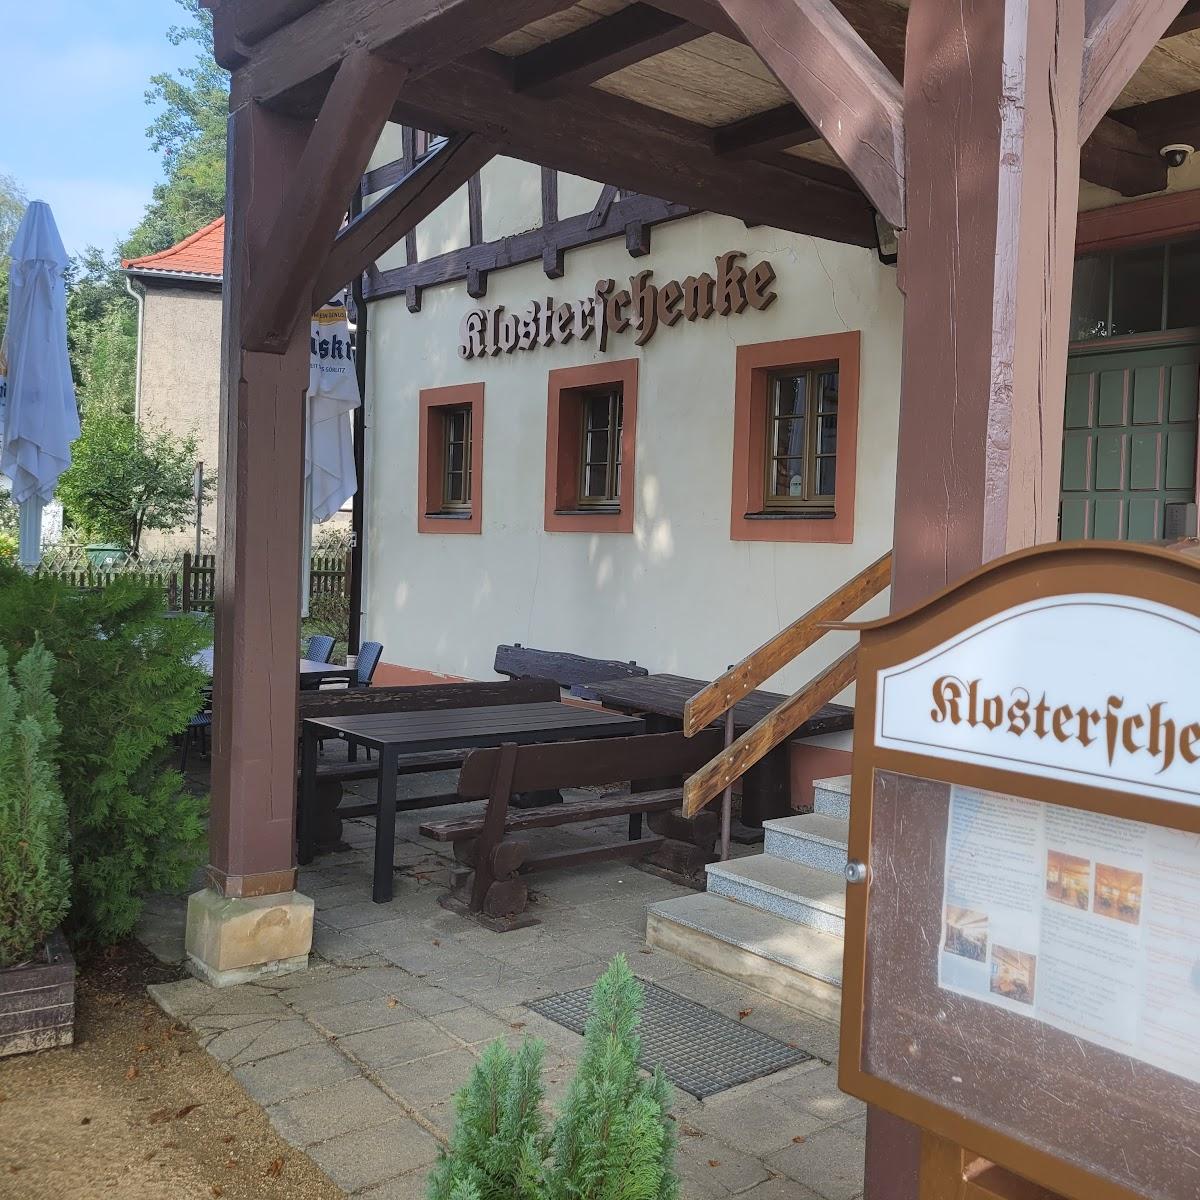 Restaurant "Klosterschenke St. Marienthal" in Ostritz